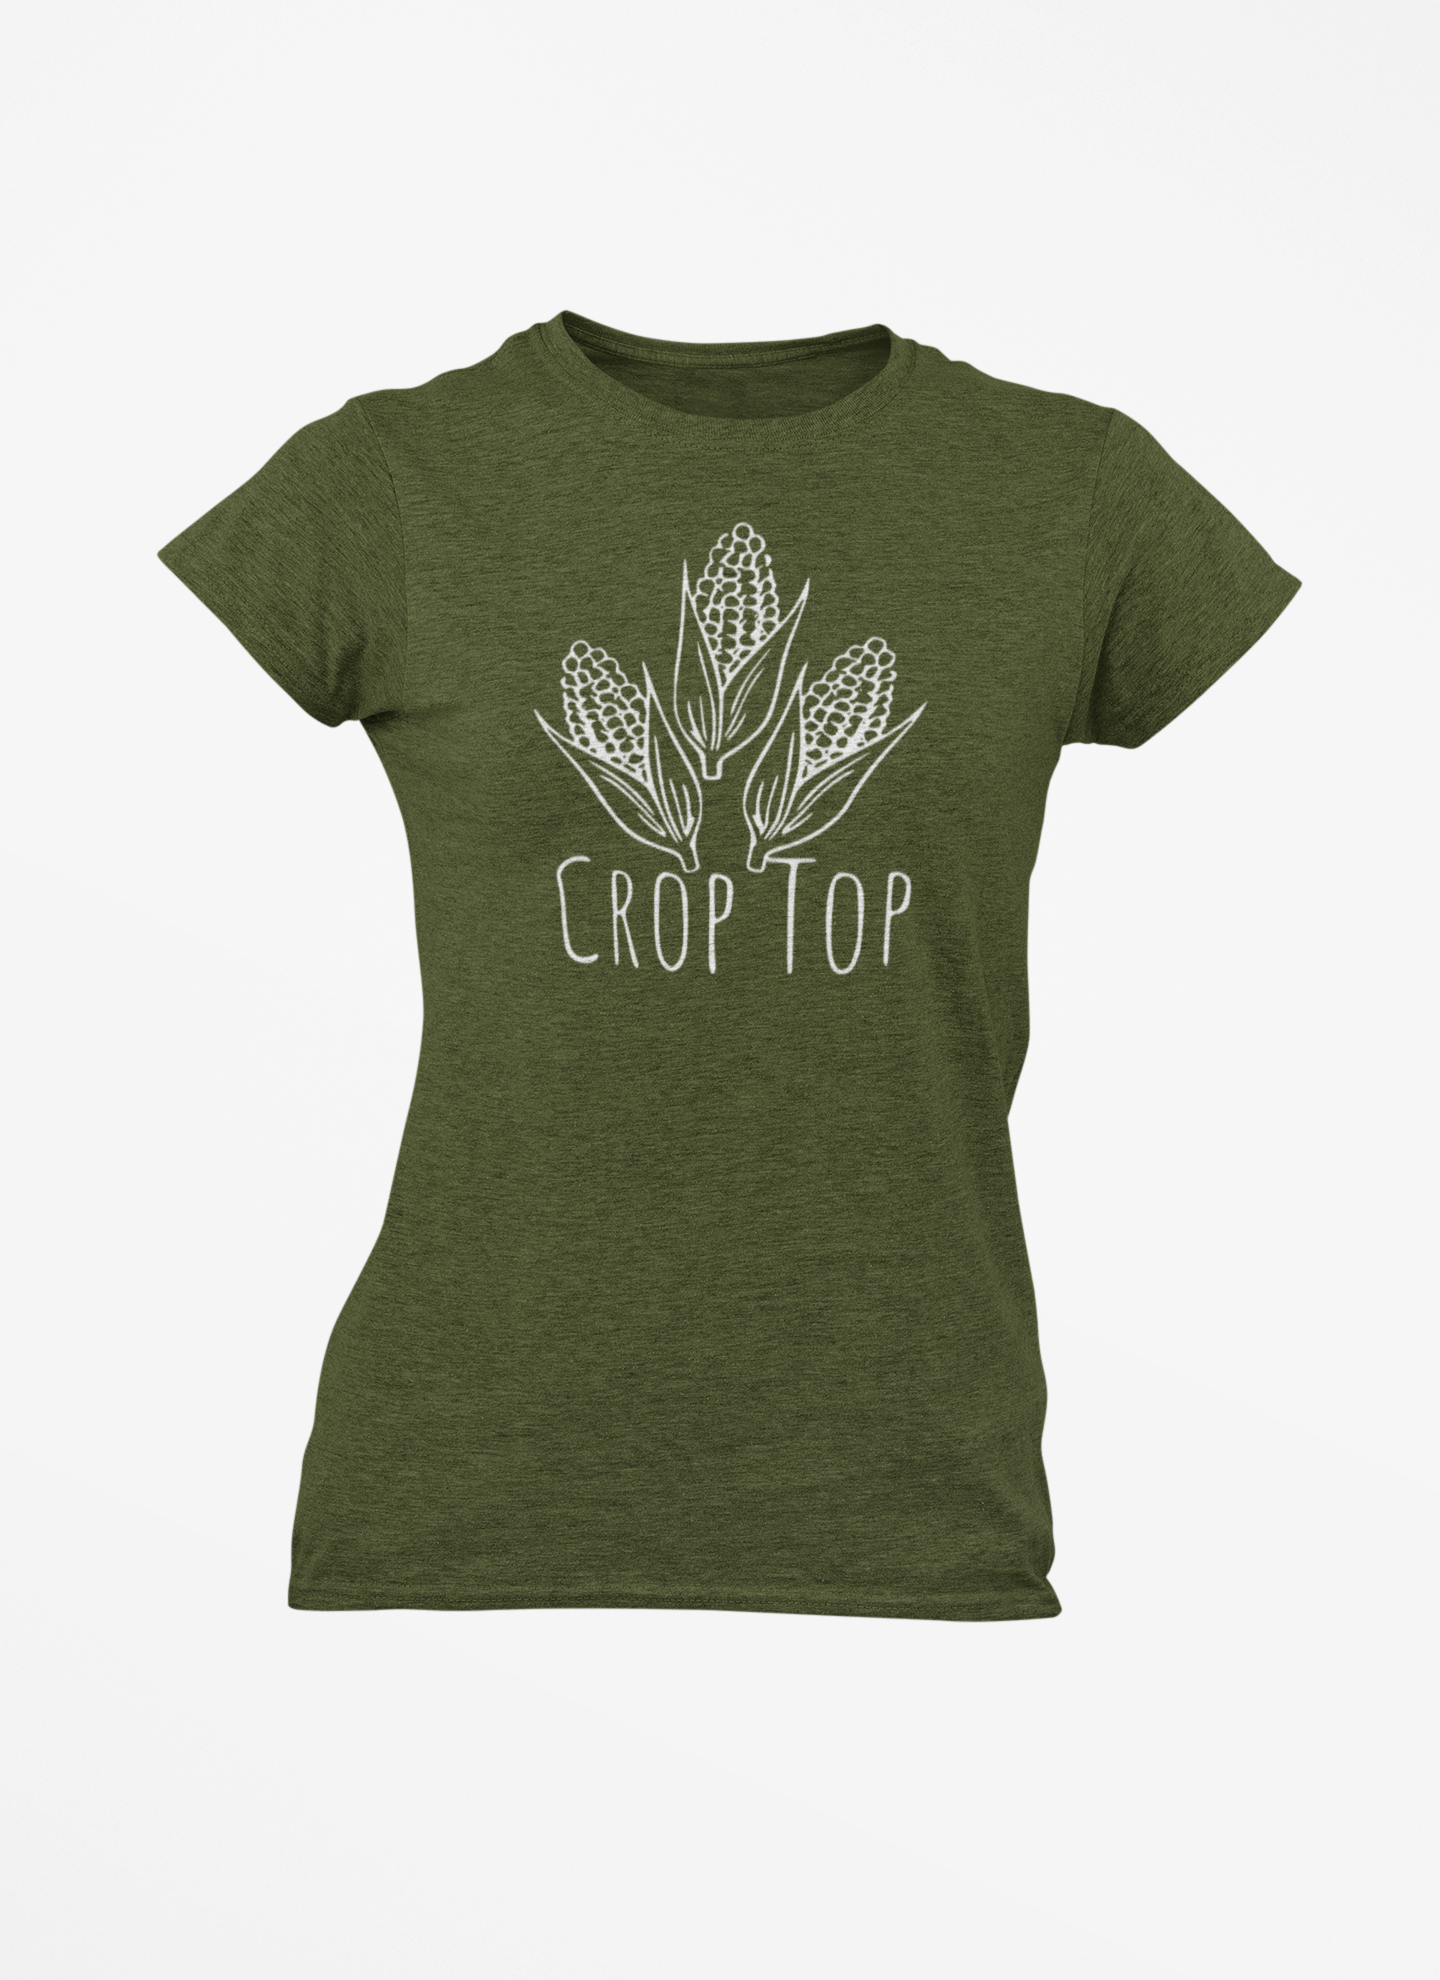 Women's Crop Top T